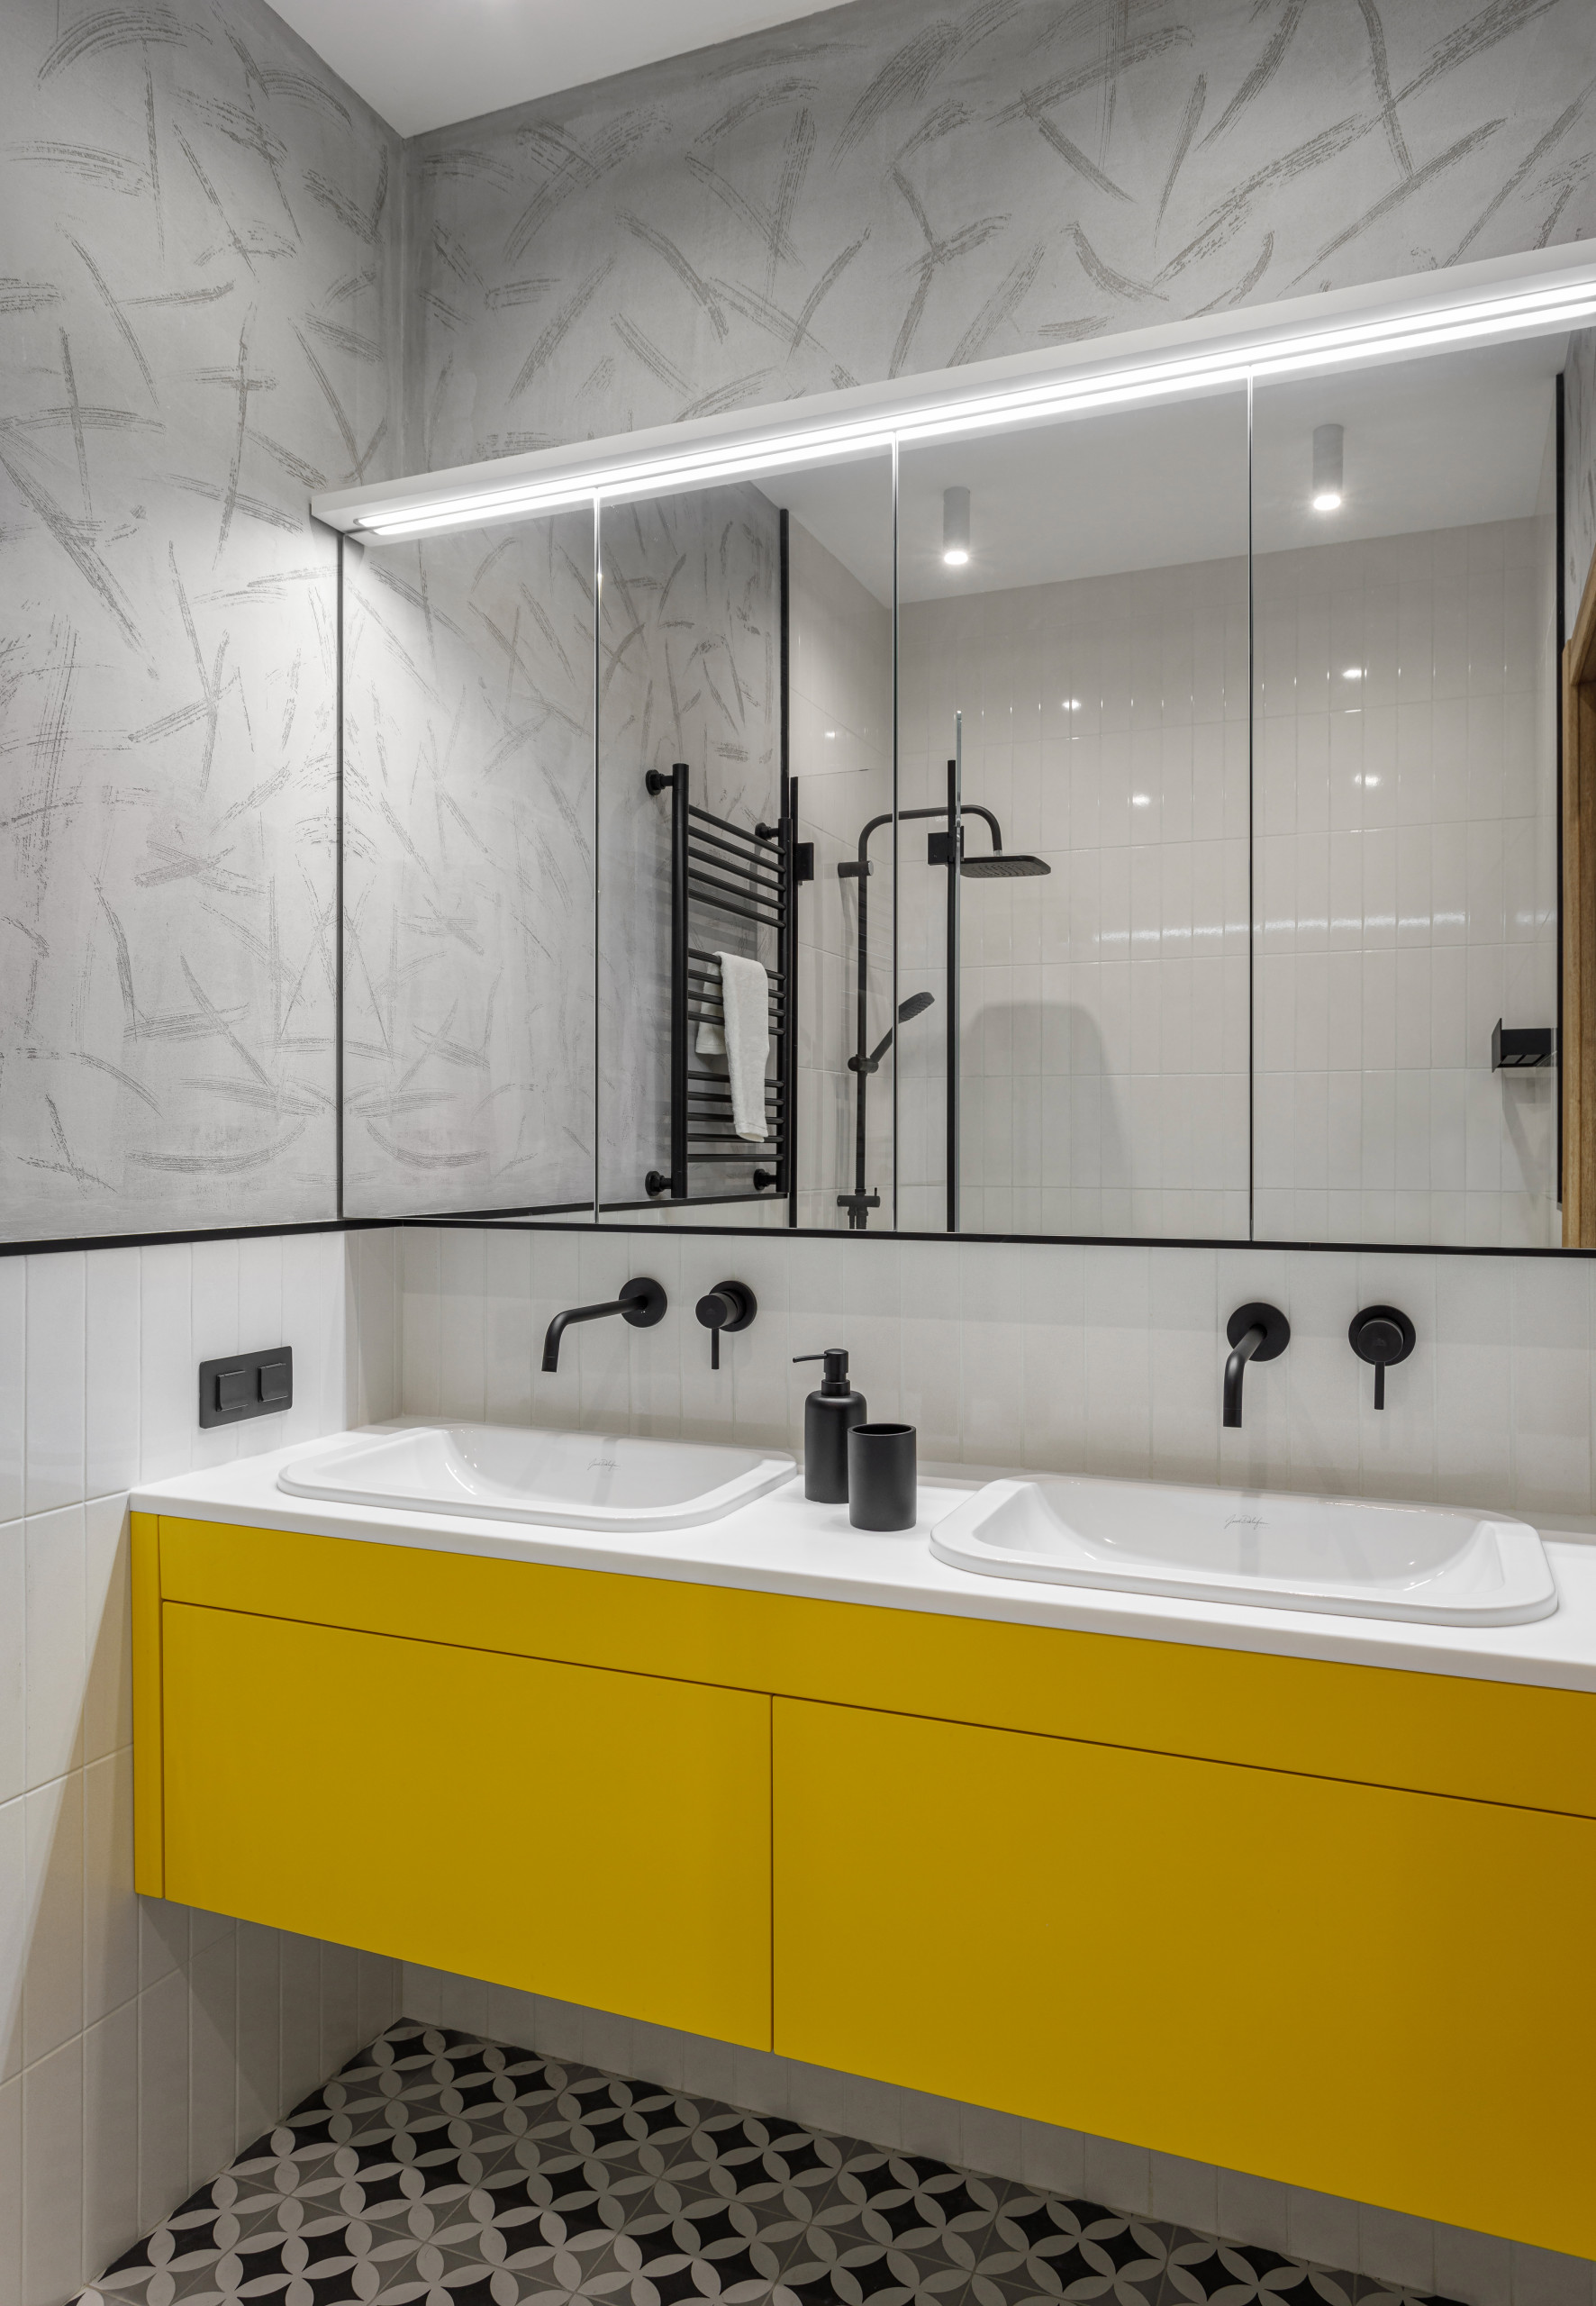 Как выбрать плитку для маленькой ванной: фото вариантов оформления, цветовые решения